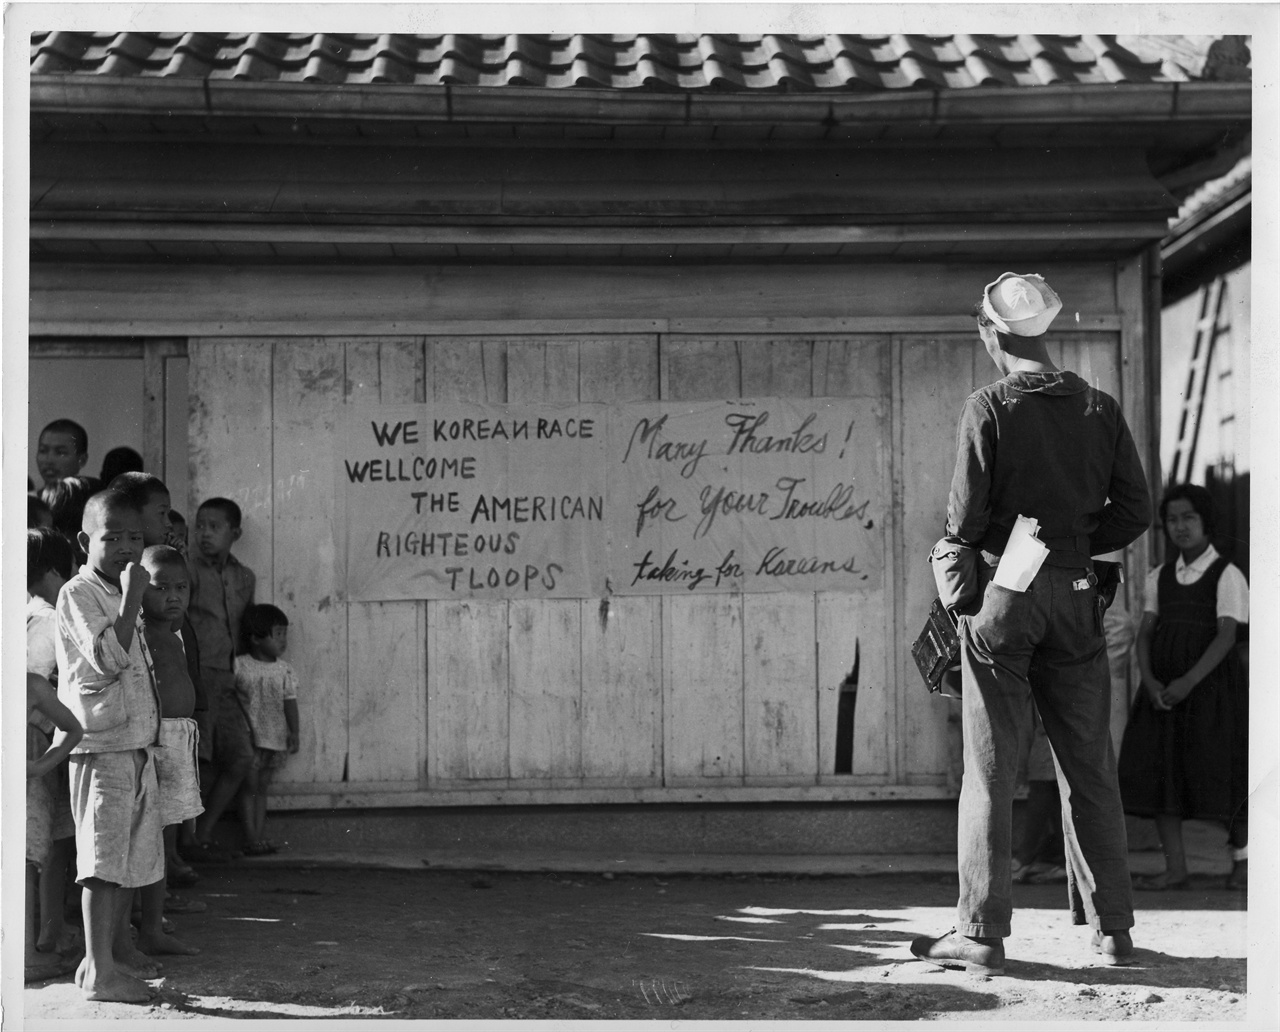  1945. 9. 16. 한 미군이 “한국인은 미군을 환영한다”는 게시판을 바라보고 있다. 